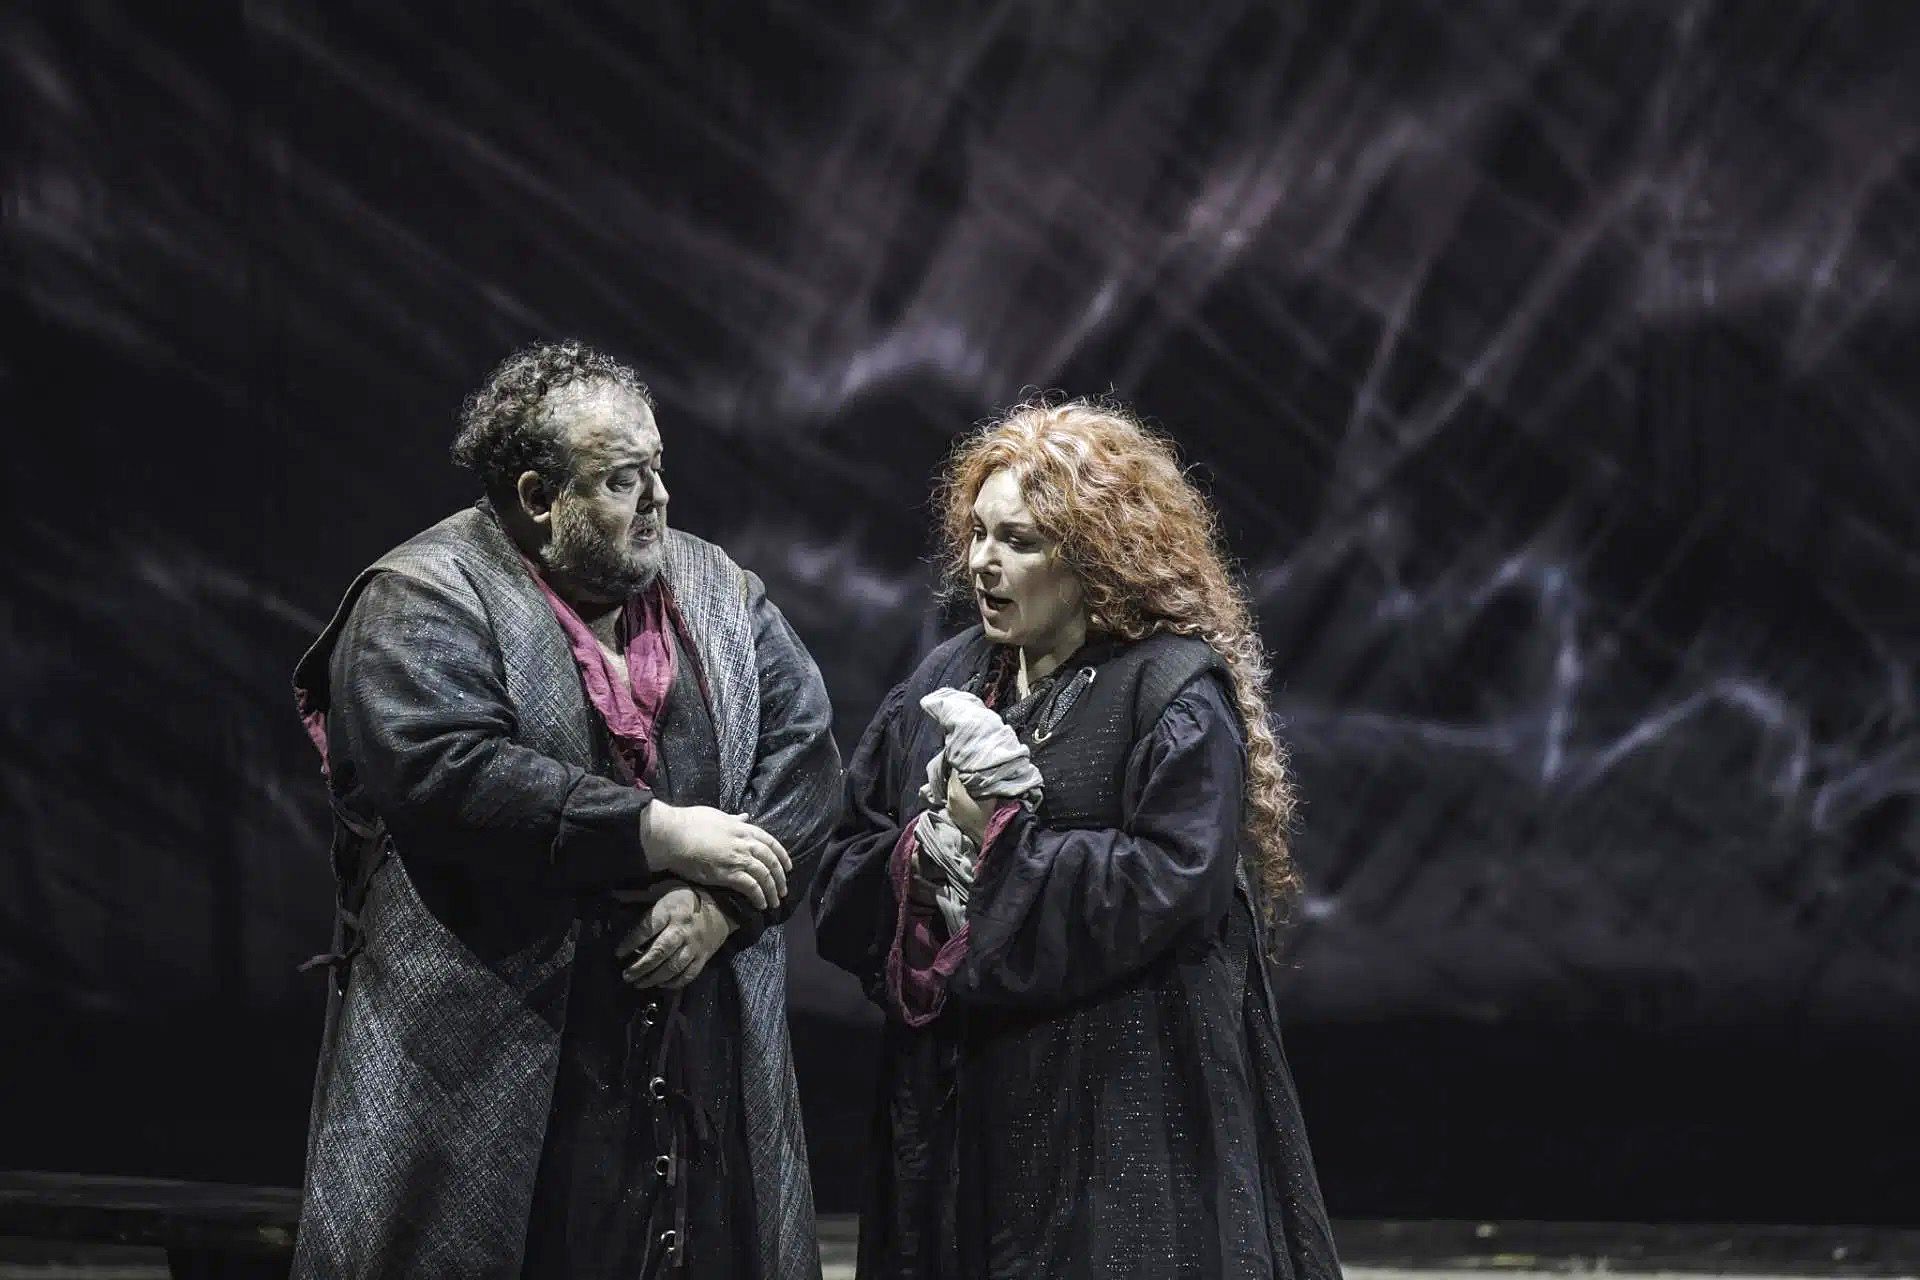 Amartuvshin Enkhbat y María José Siri en ‘Il trovatore’ de Verdi.